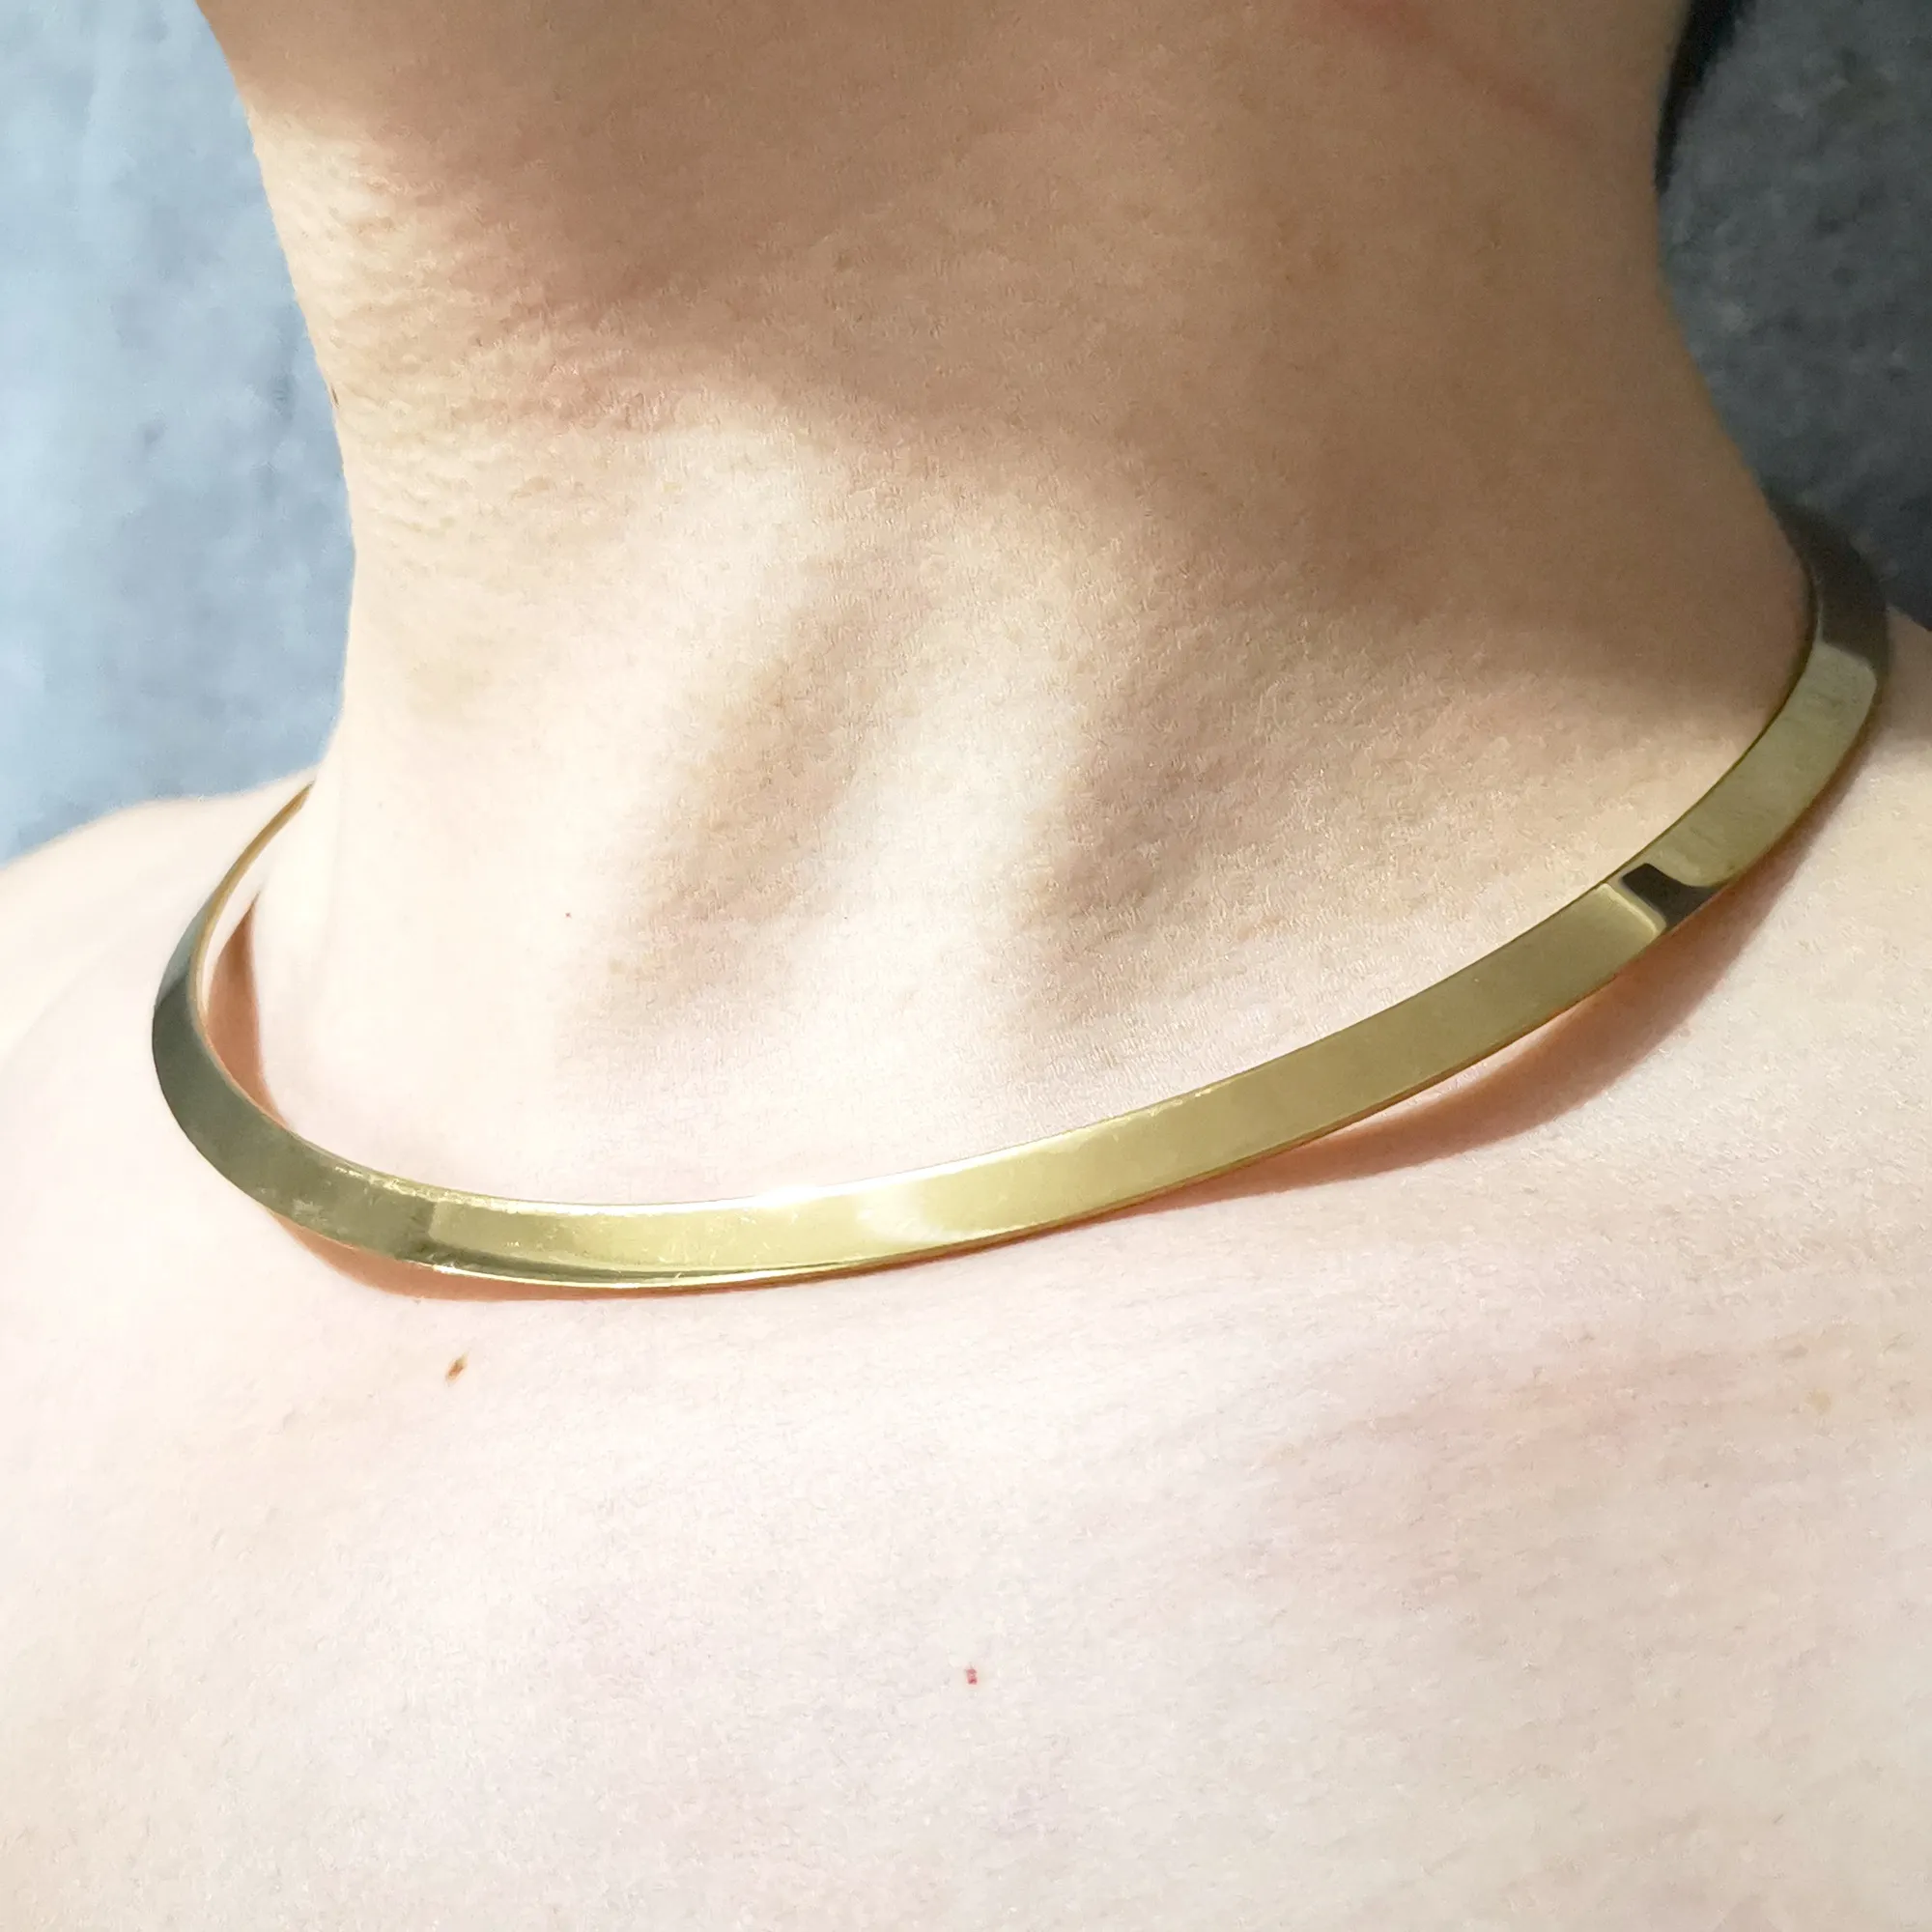 NEW моды дизайн из нержавеющей стали 3MM ожерелье воротник цепи ожерелье мужчина женщина манжета золотые украшения для праздника подарки Хэллоуин подарок